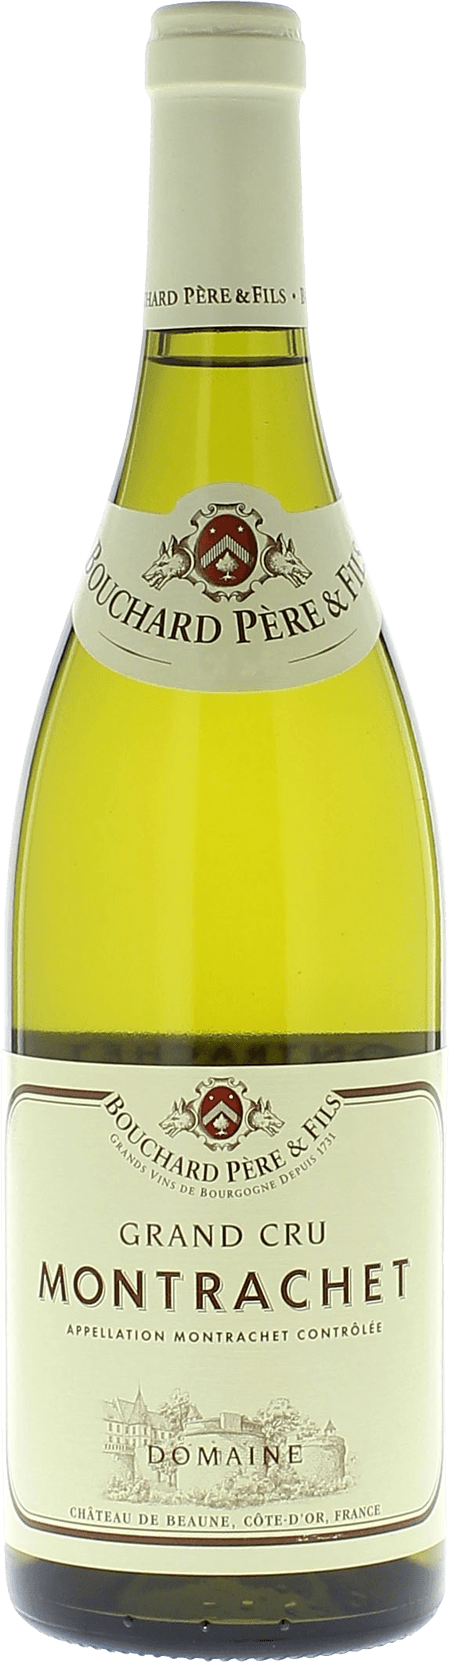 Montrachet grand cru 2019  BOUCHARD Pre et fils, Bourgogne blanc